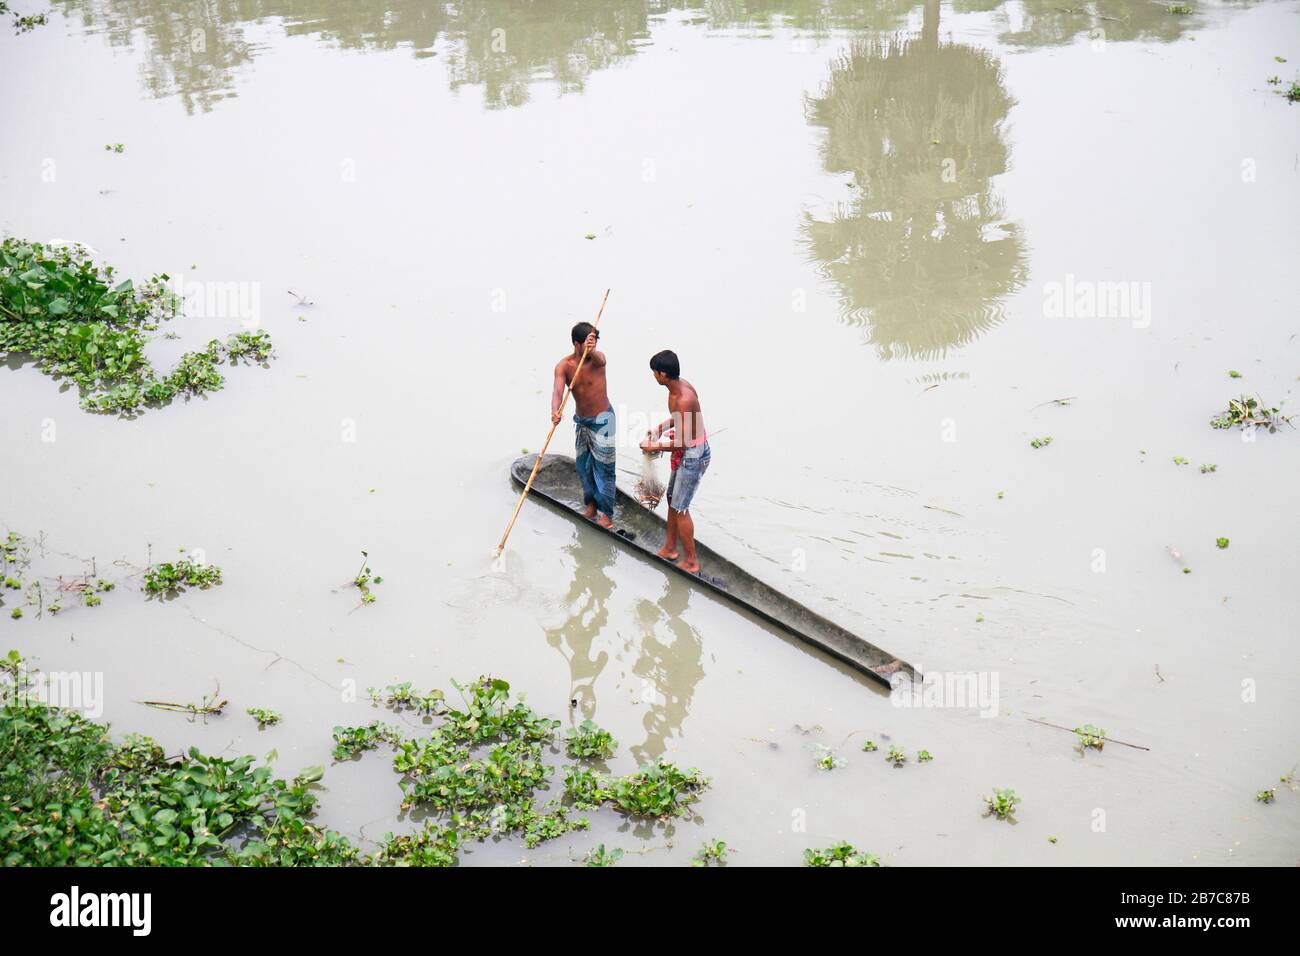 Le Bangladesh est l'un des pays les plus vulnérables aux changements climatiques. Les inondations sont ici la principale calamité naturelle pour les populations rurales pauvres Banque D'Images